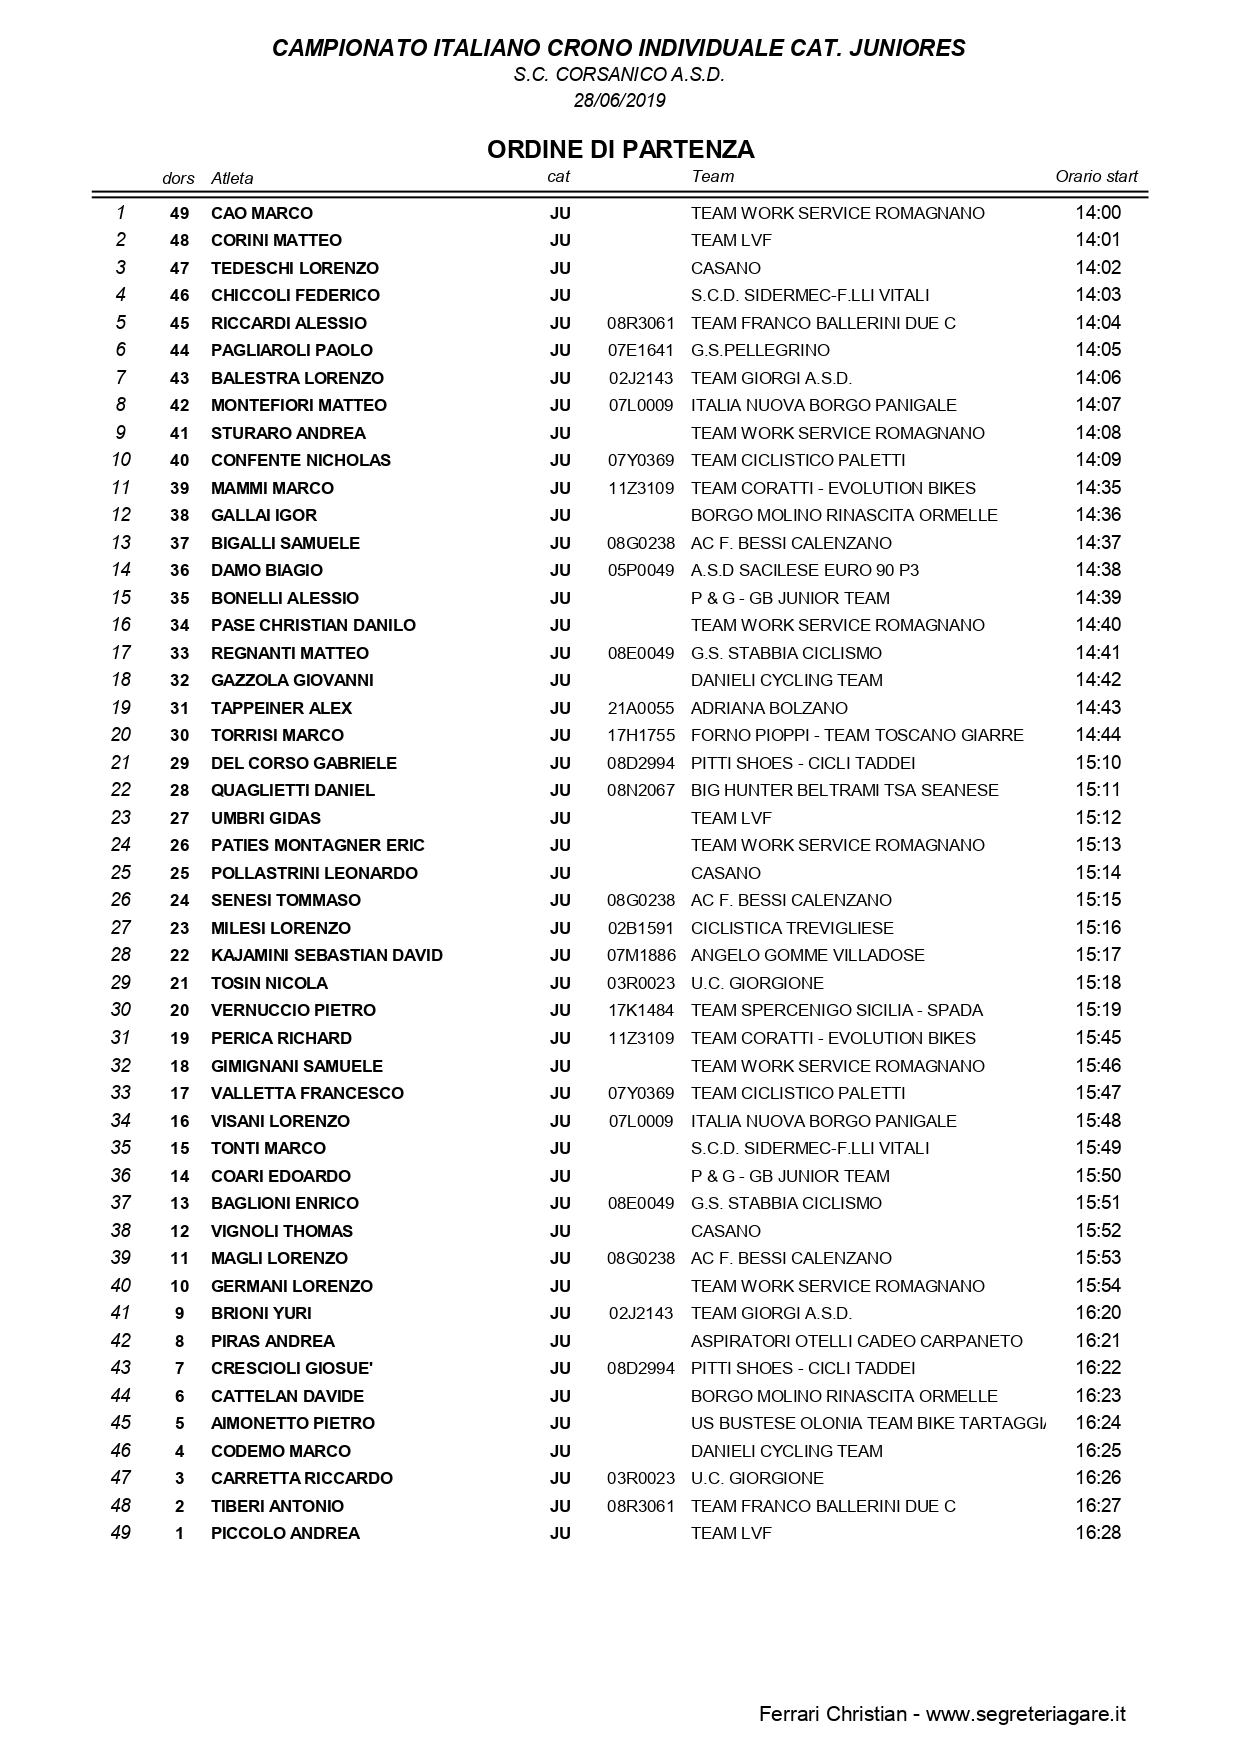 Starting list campionato italiano a cronometro juniores uomini 